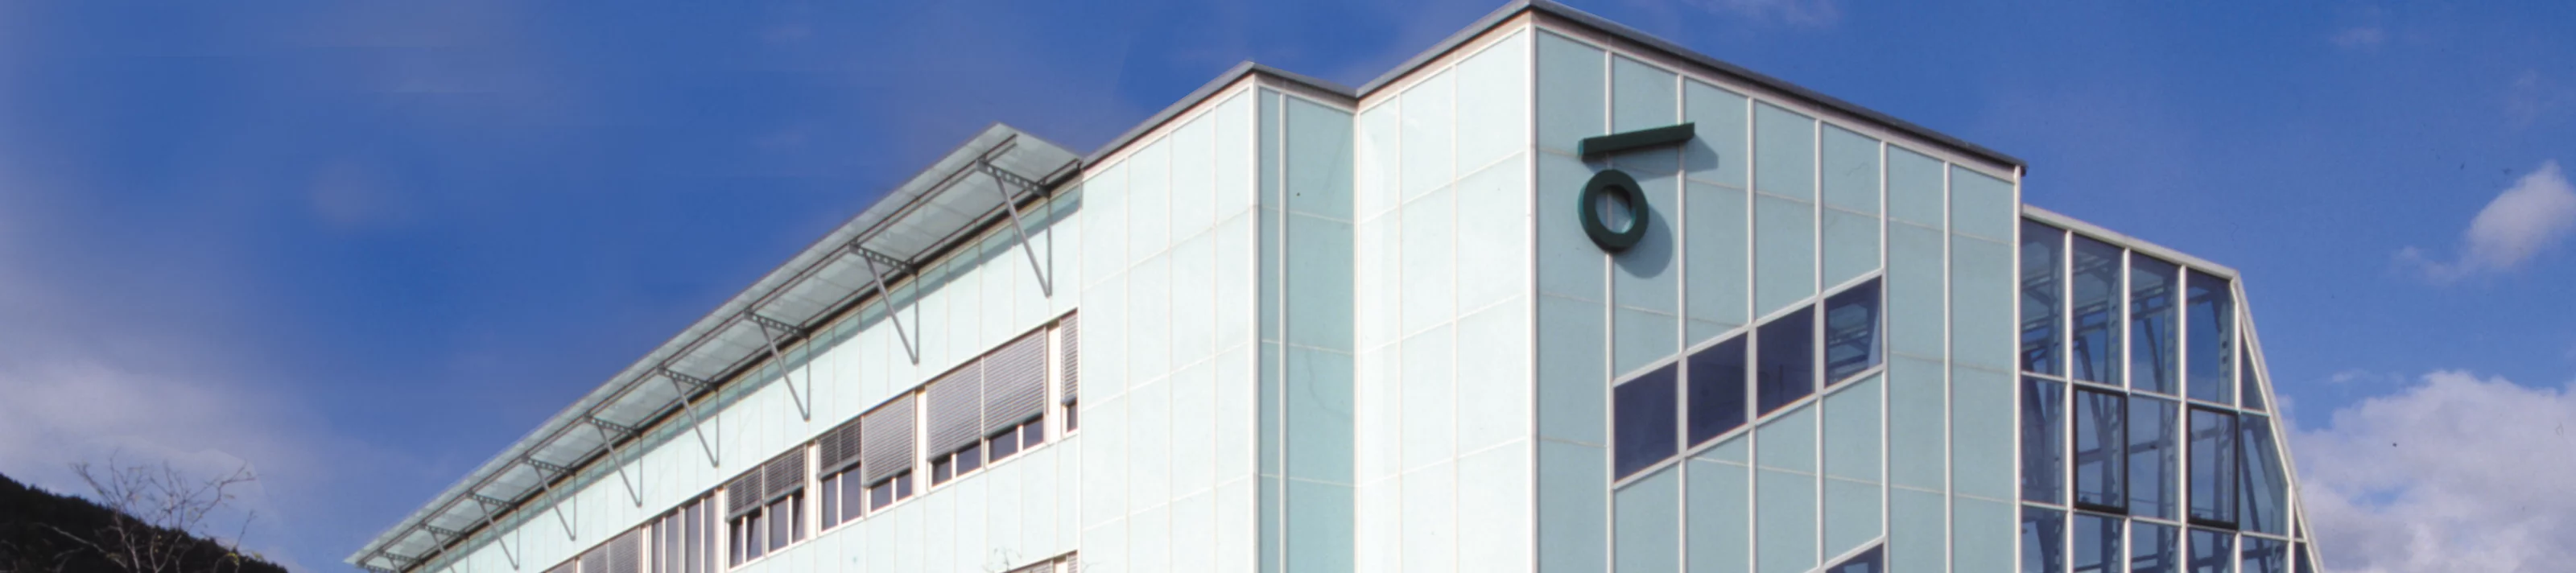 Fassade VHF hinterlüftet vorgehängt Hotelfachschule